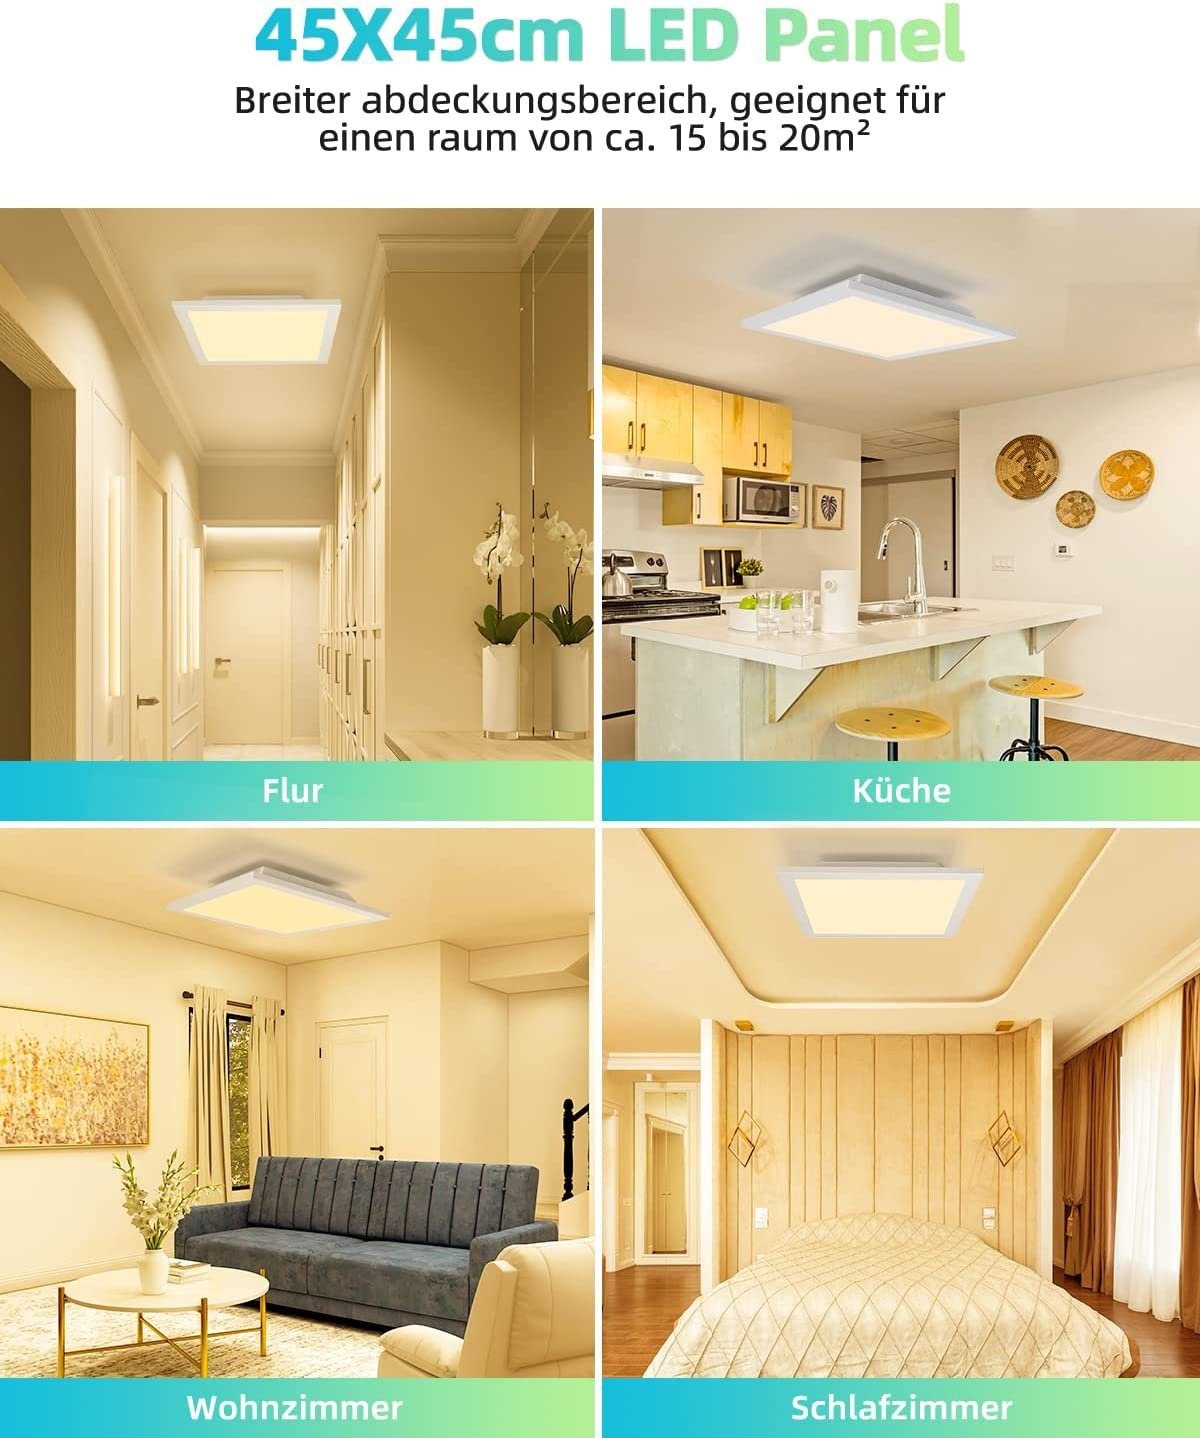 Deckenleuchten Warmweiß, 3000K 45*45cm LED für Büro, Panel ZMH Wohnzimmer,45*45cm/60*60cm, Flach Design